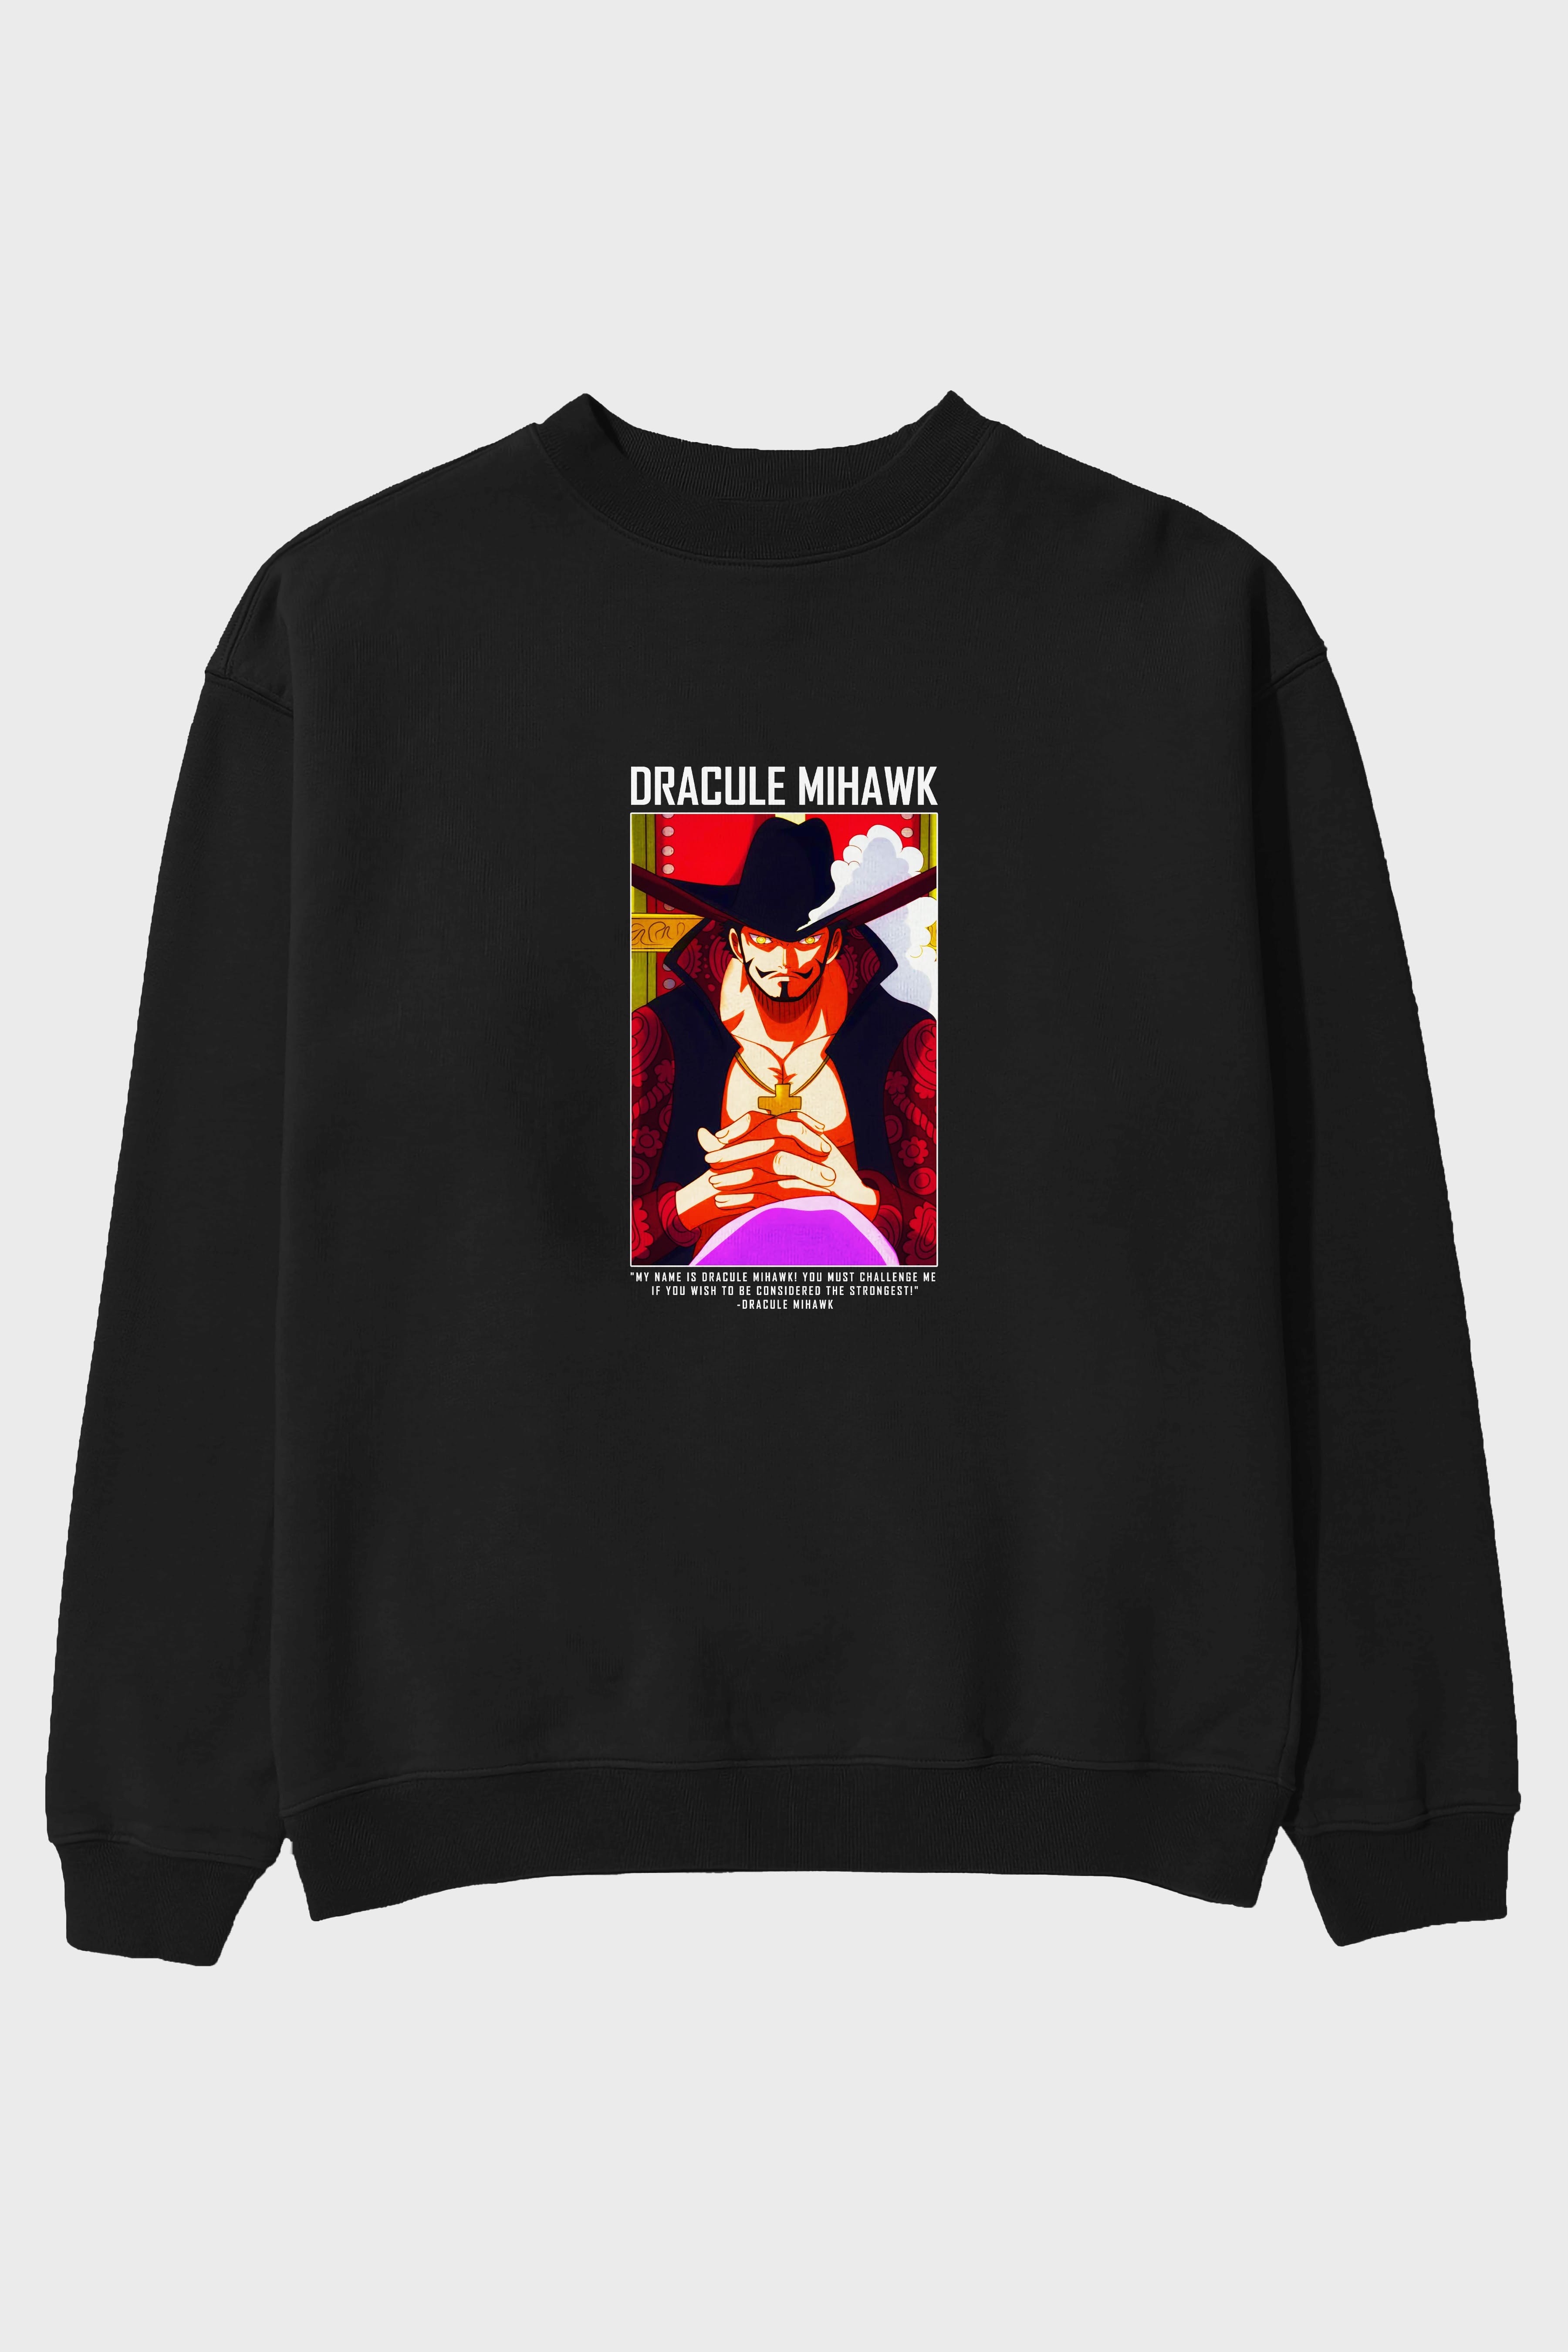 Dracule Mihawk Ön Baskılı Anime Oversize Sweatshirt Erkek Kadın Unisex